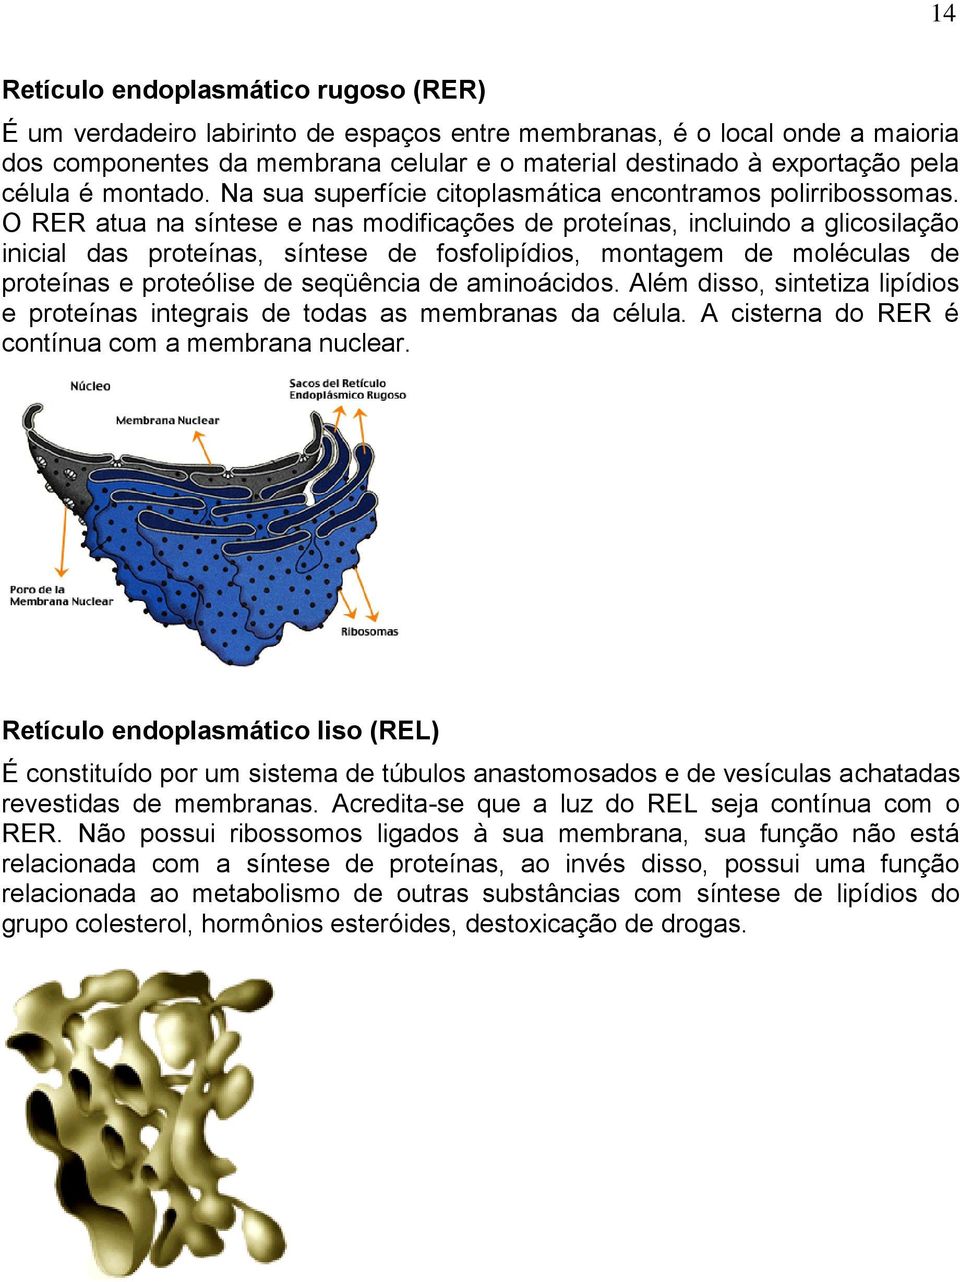 O RER atua na síntese e nas modificações de proteínas, incluindo a glicosilação inicial das proteínas, síntese de fosfolipídios, montagem de moléculas de proteínas e proteólise de seqüência de